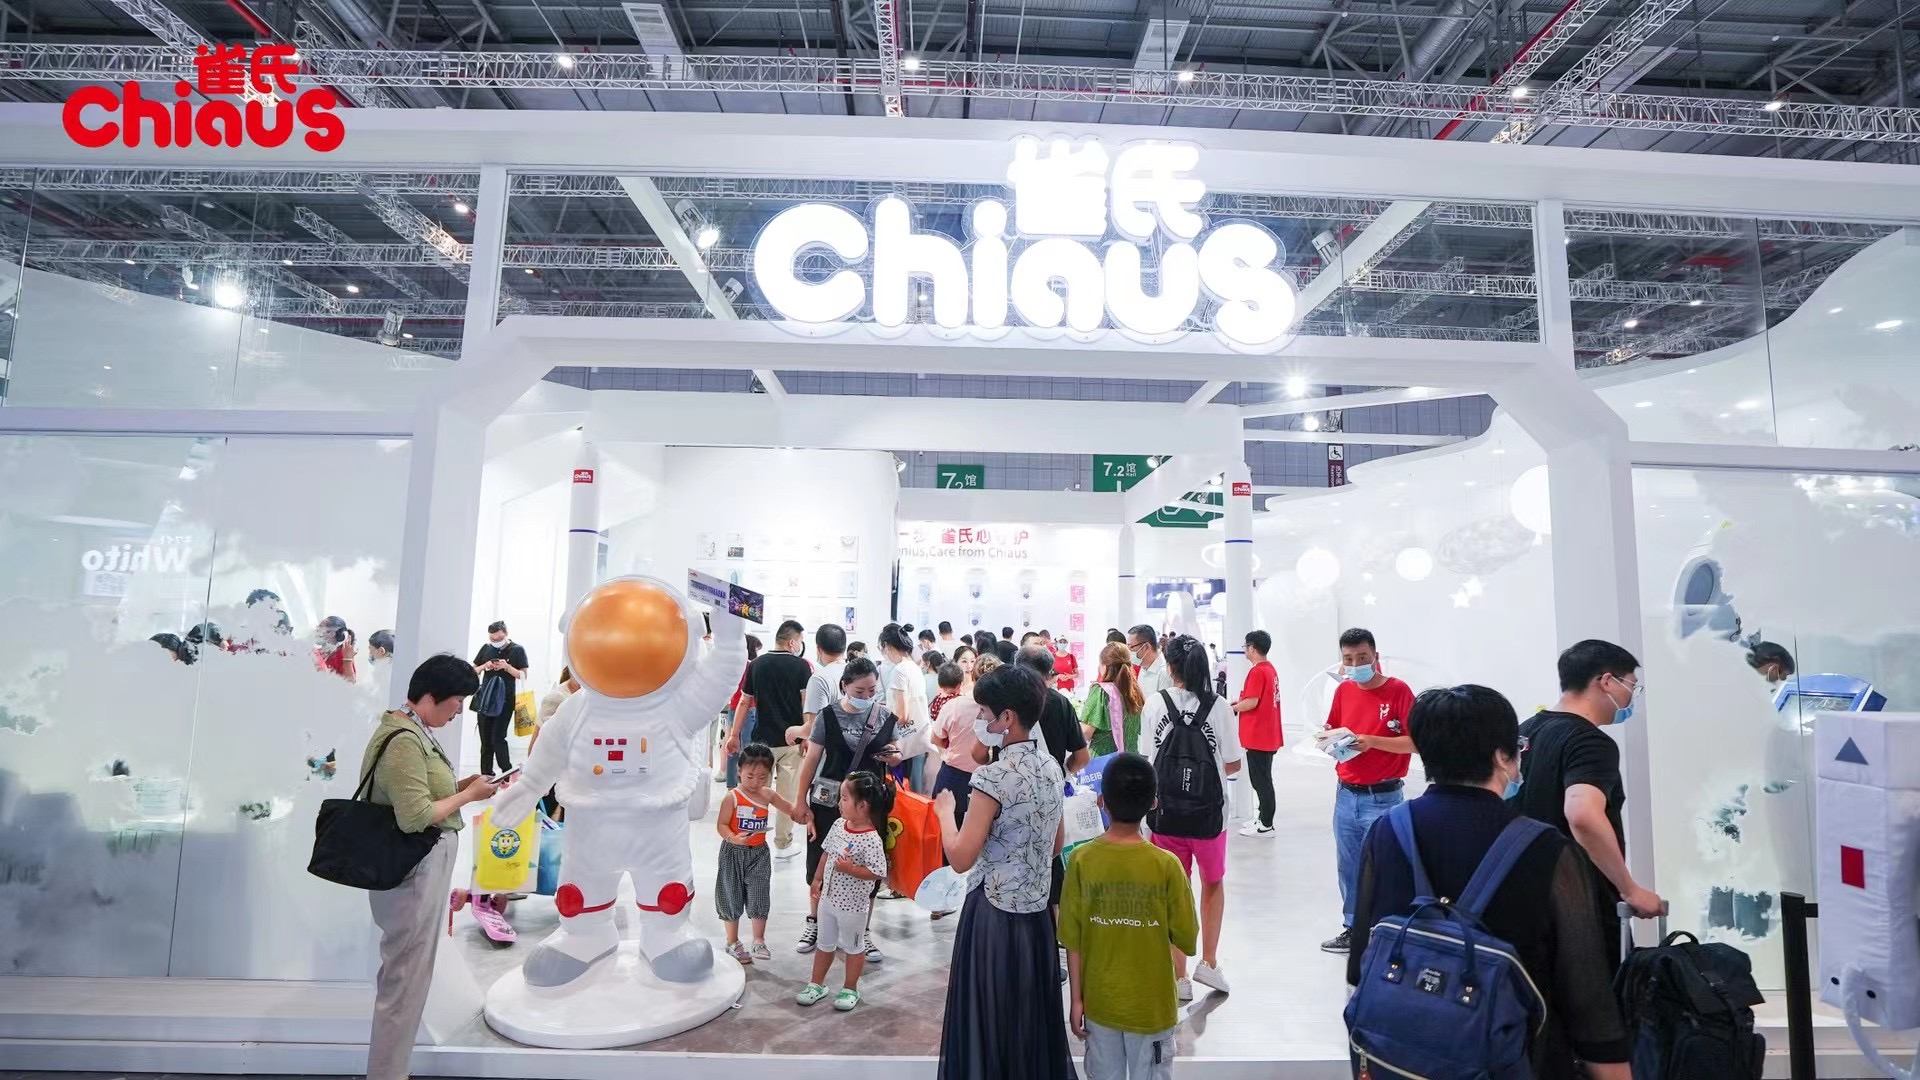 Chiaus משתתף בתערוכת מוצרי טיפוח לתינוקות הגדולה ביותר ביריד שנחאי-CBME